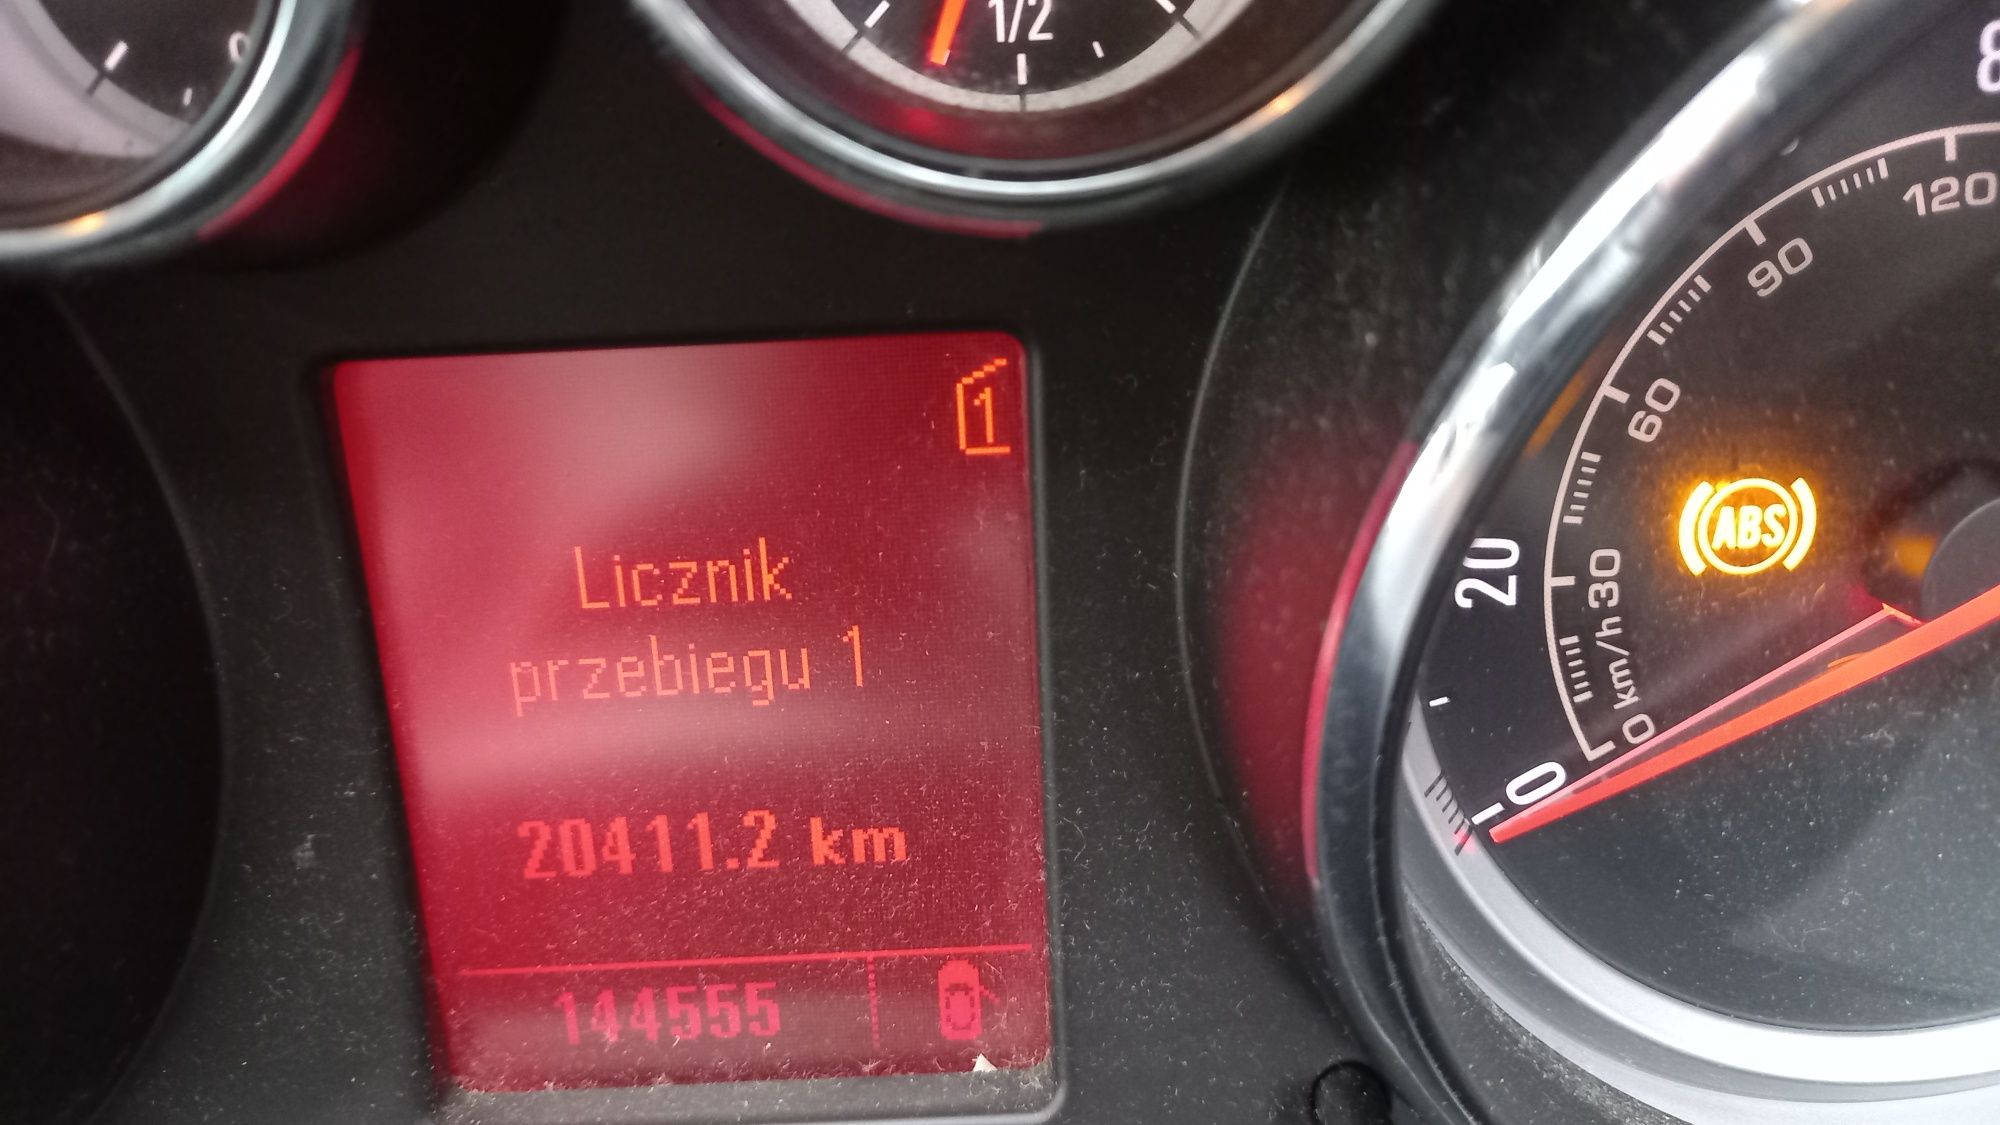 Opel insygnia 2.0 kombi ctdi